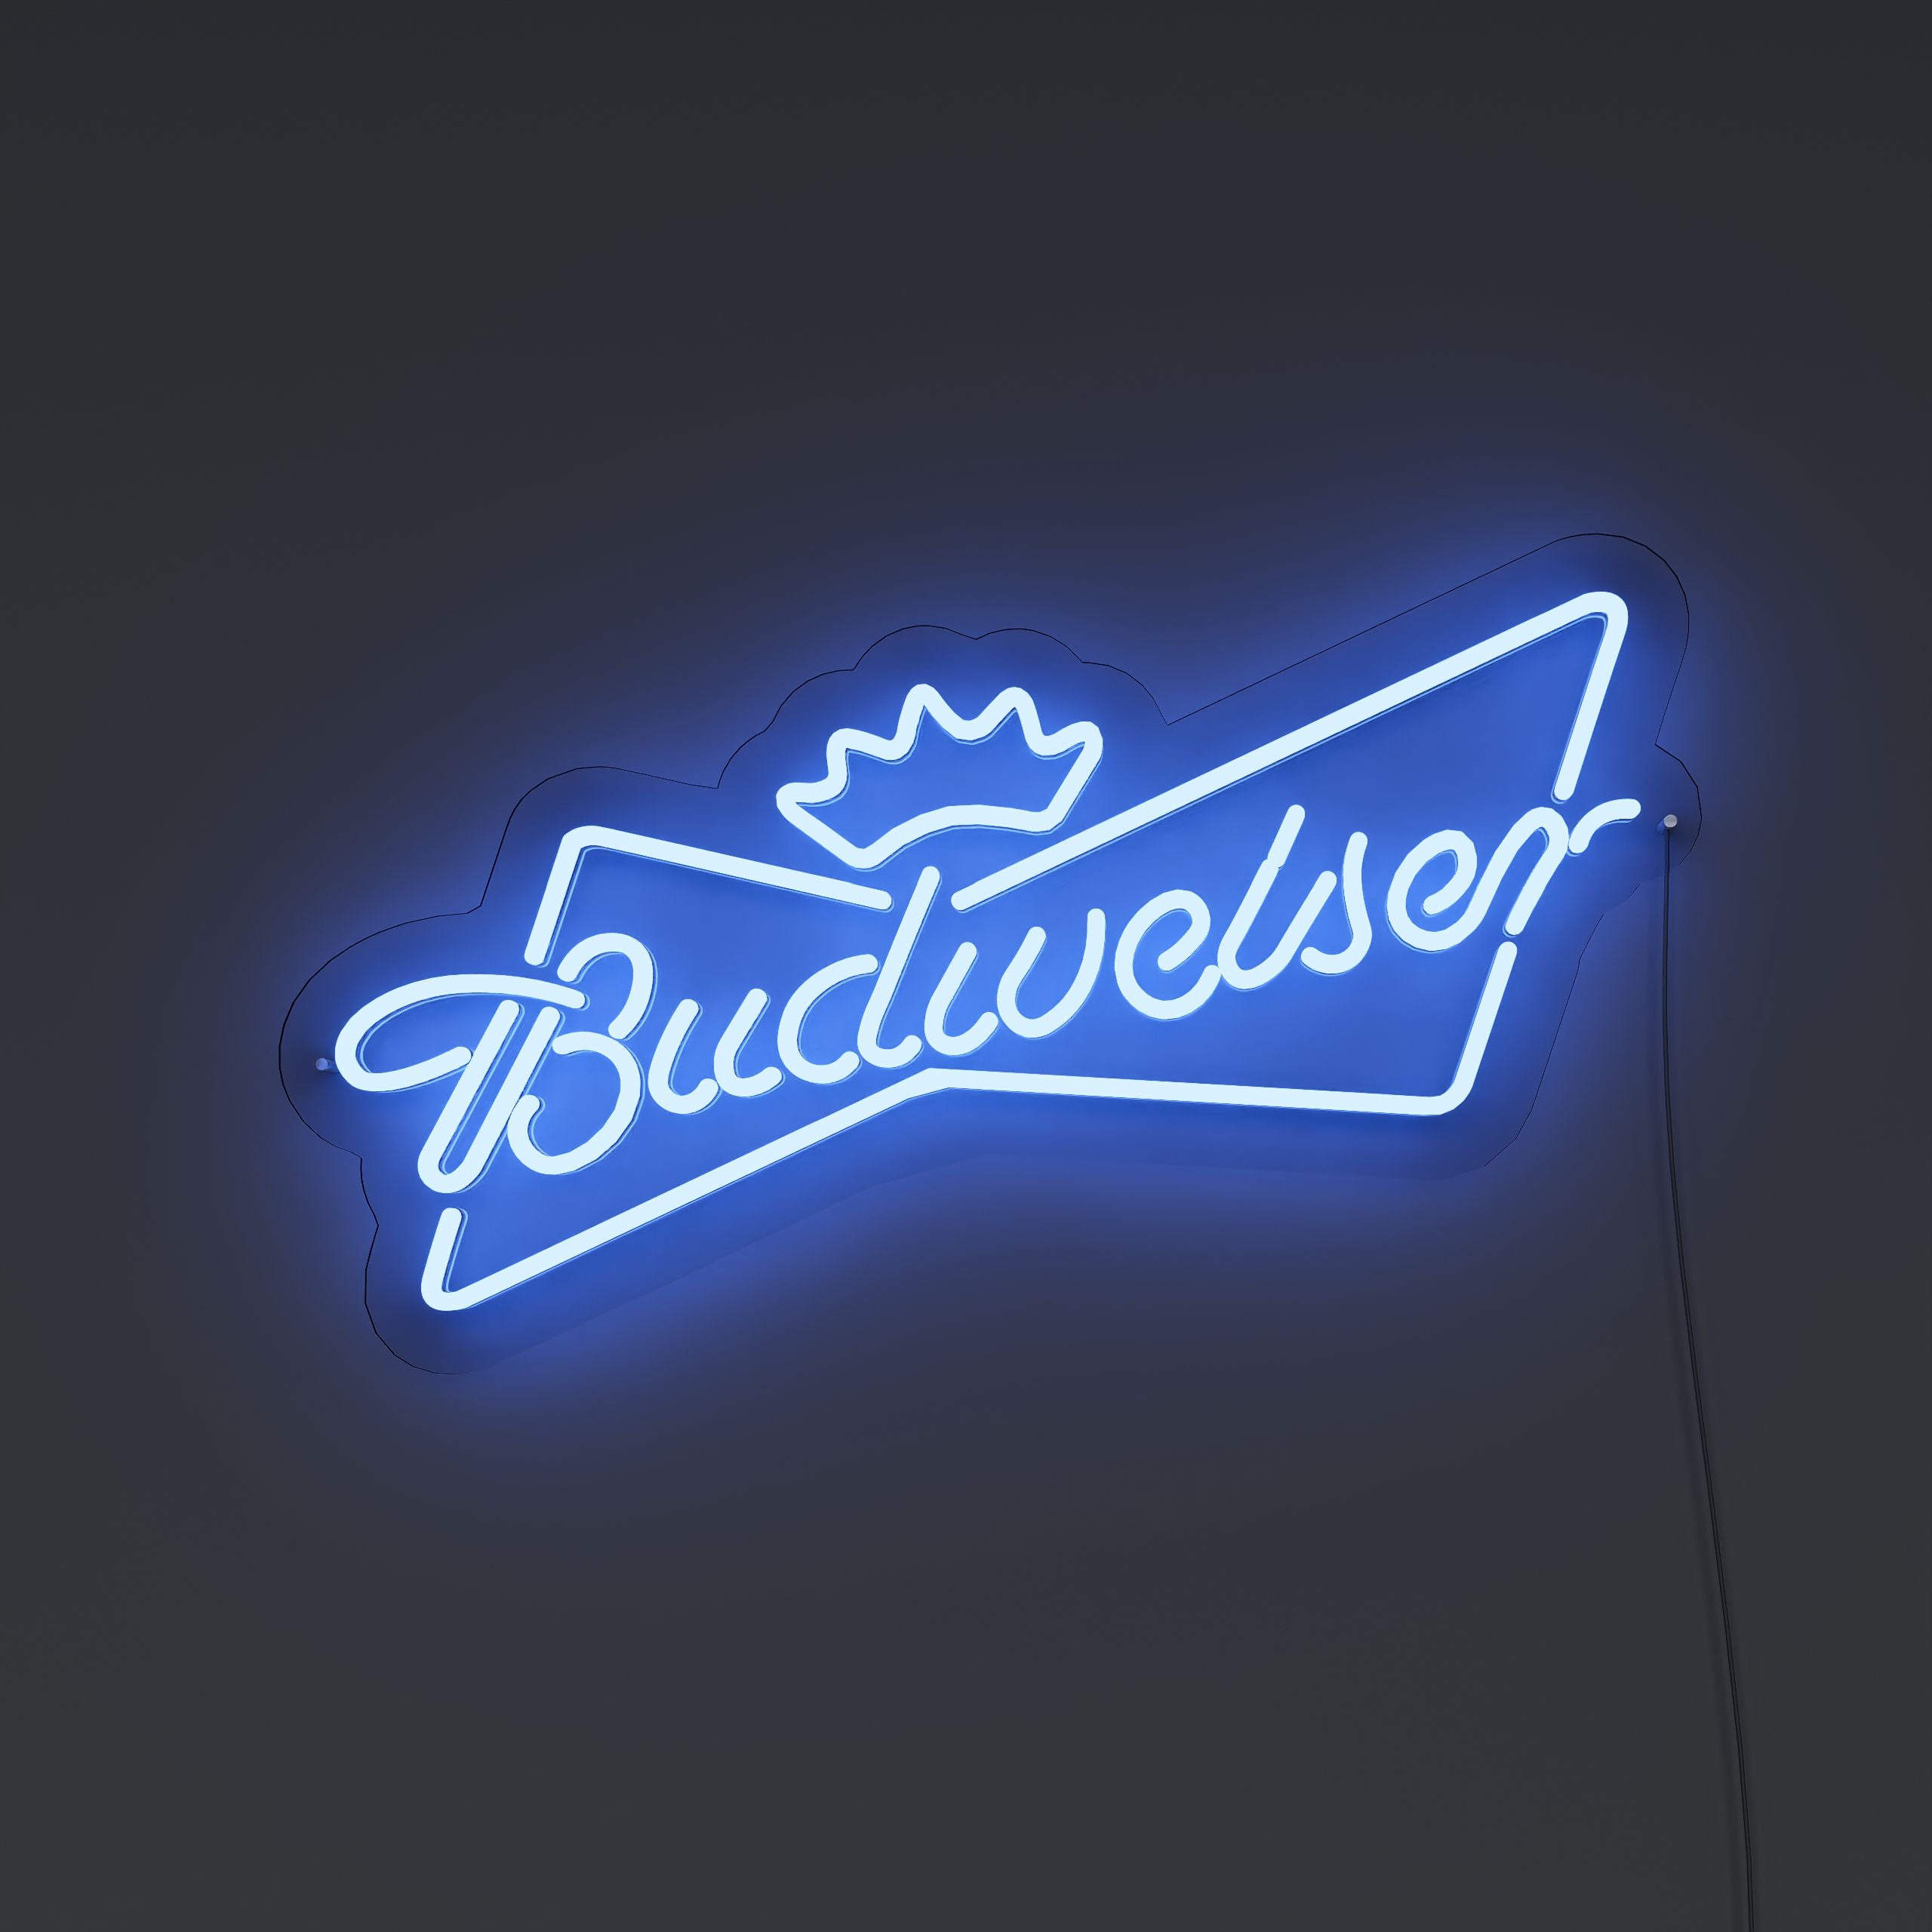 tbudweiser-neon-signs-DarkBlue-Neon-sign-Lite